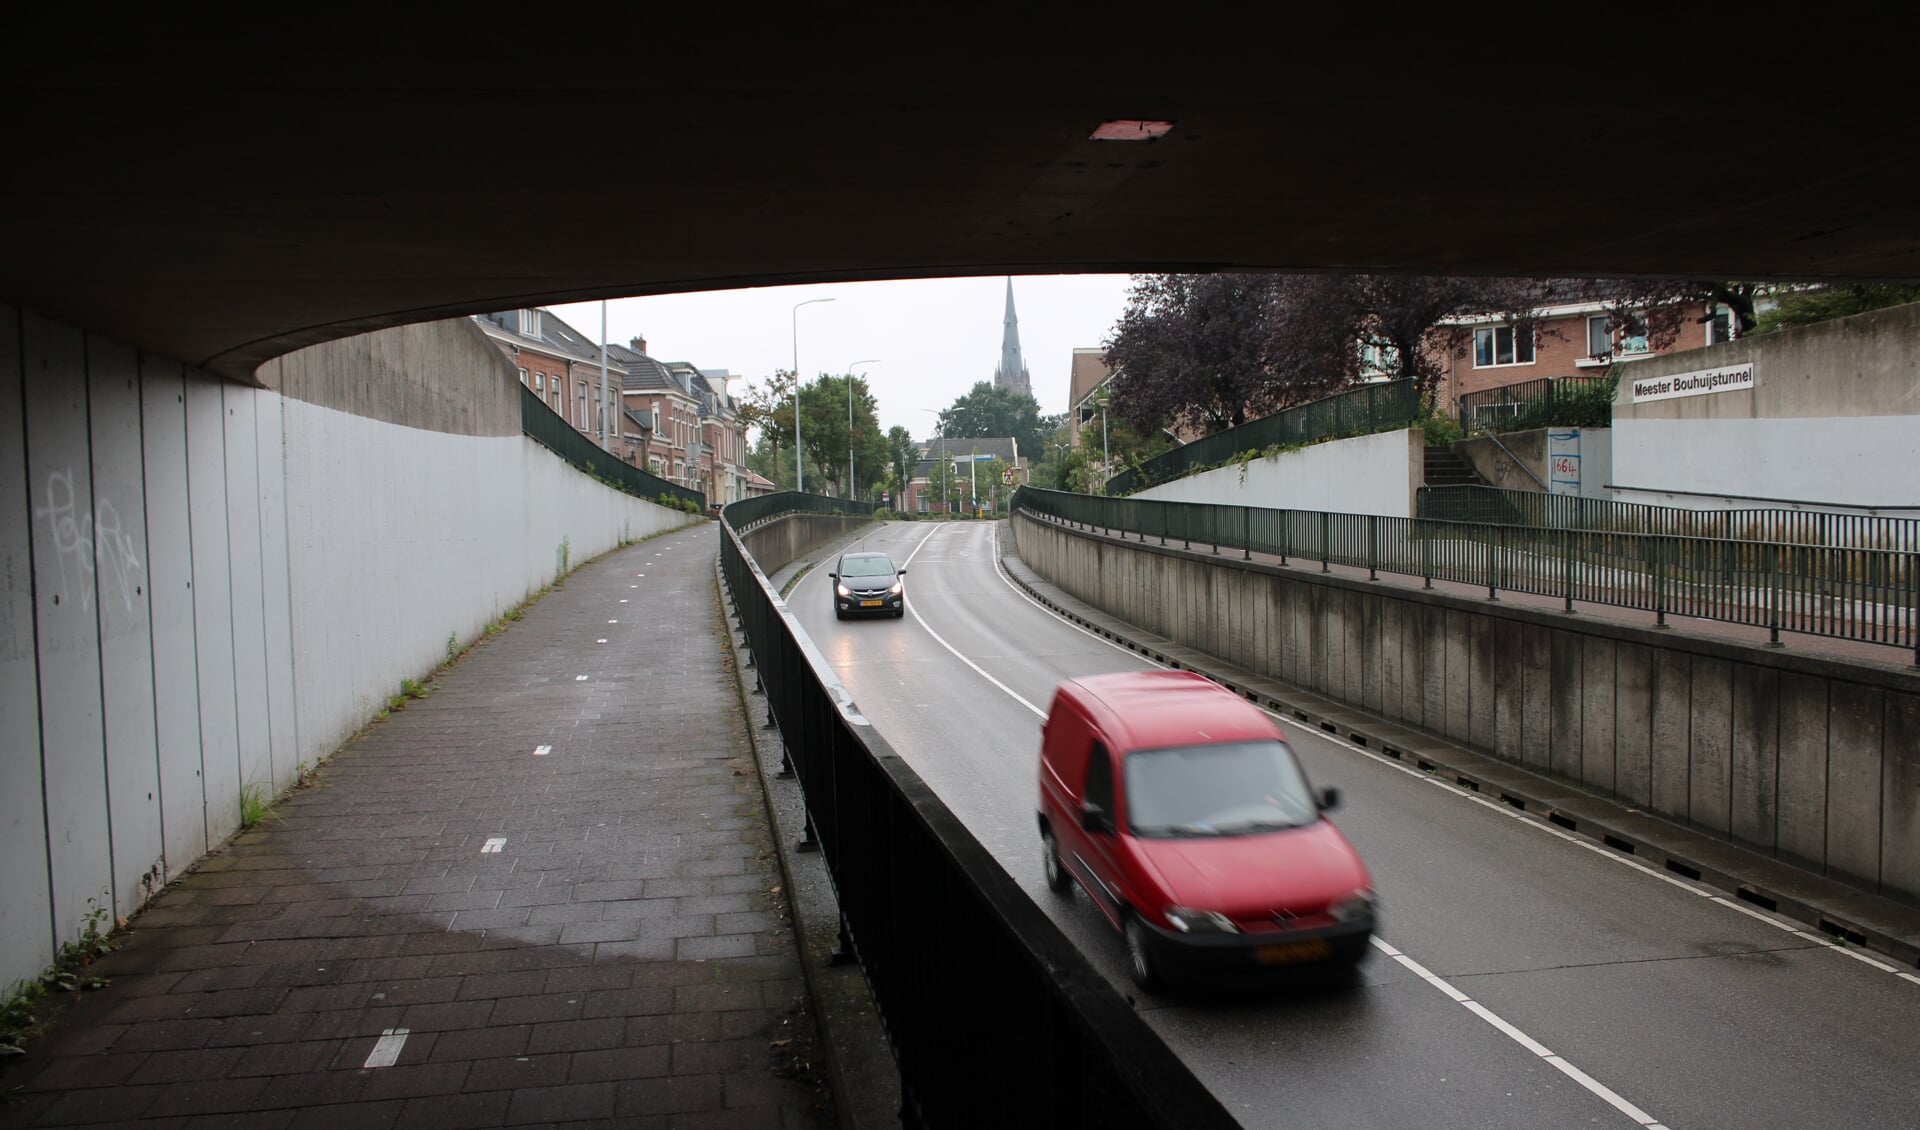 In de Meester Bouhuijstunnel zijn geen bewakingscamera's nodig.